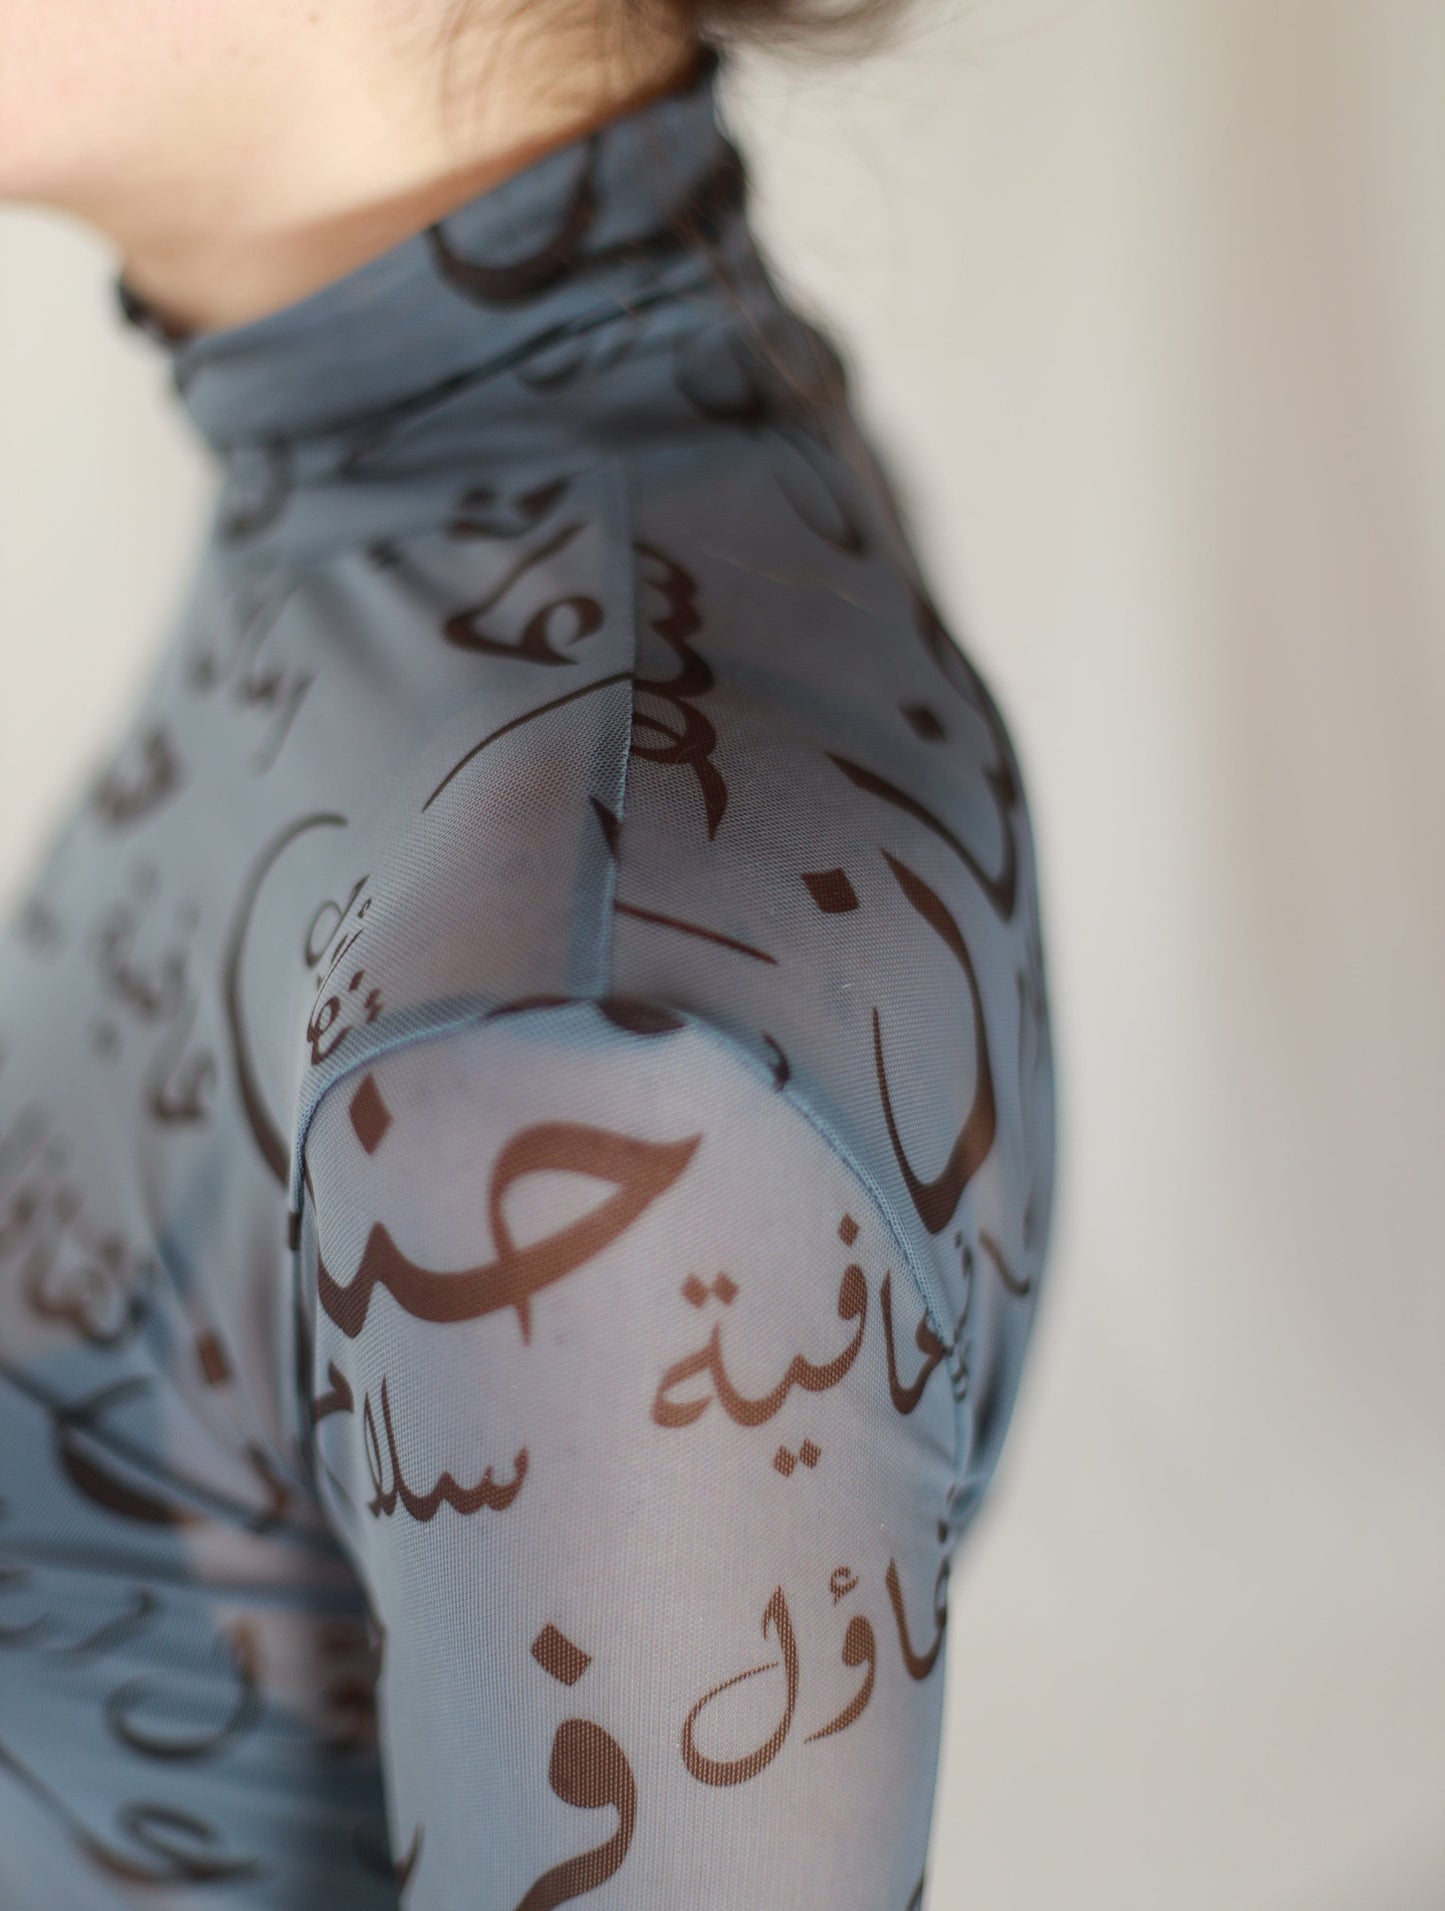 Calligraphy Sheer Top by Farah Daylaq Deerah